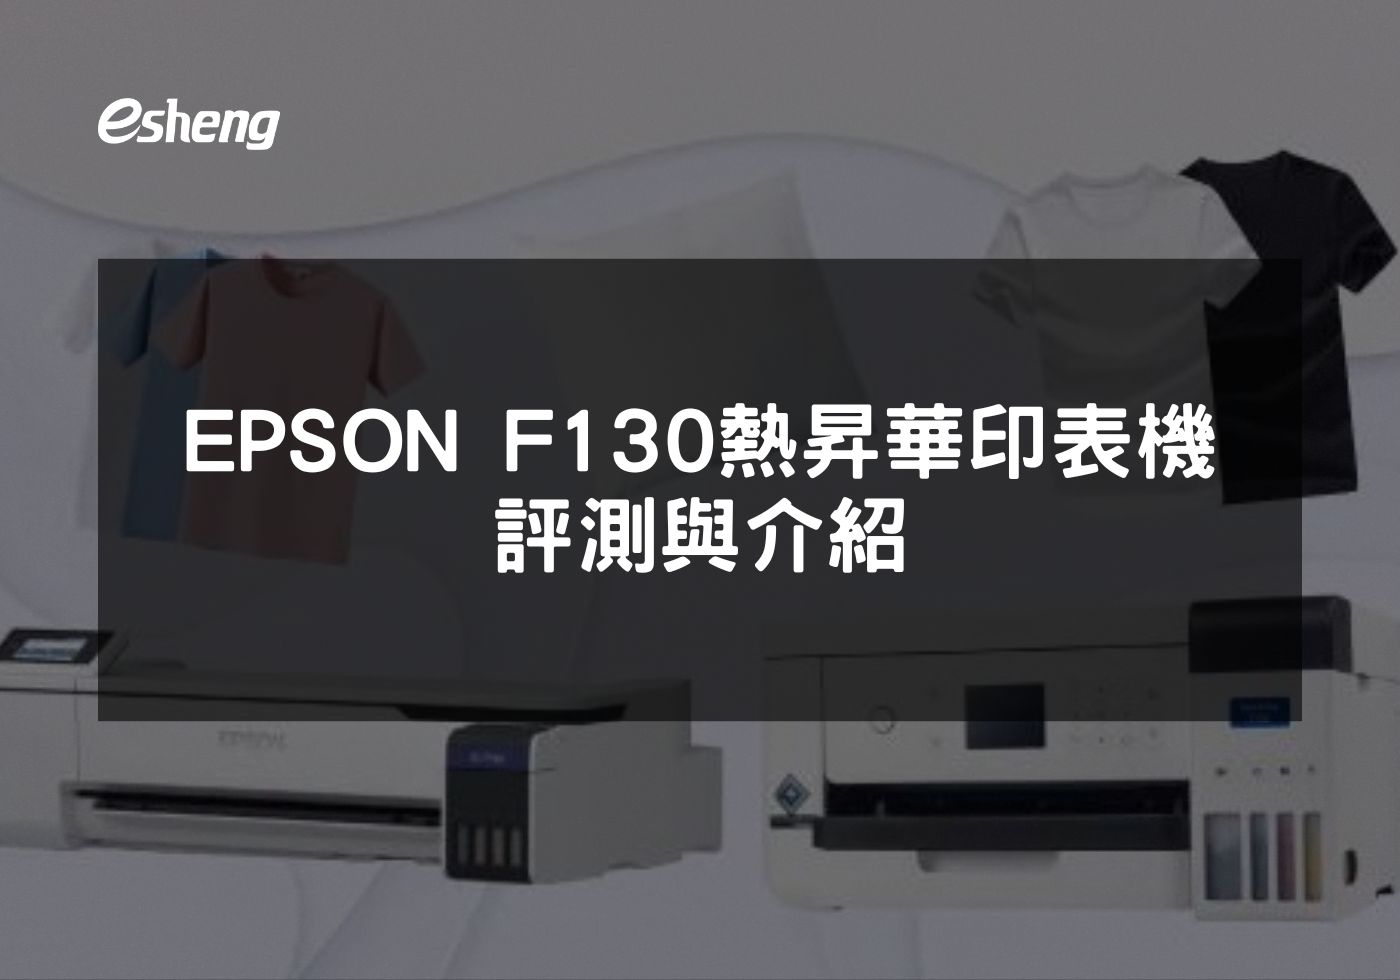 EPSON F130高解析度熱昇華印表機功能全解析